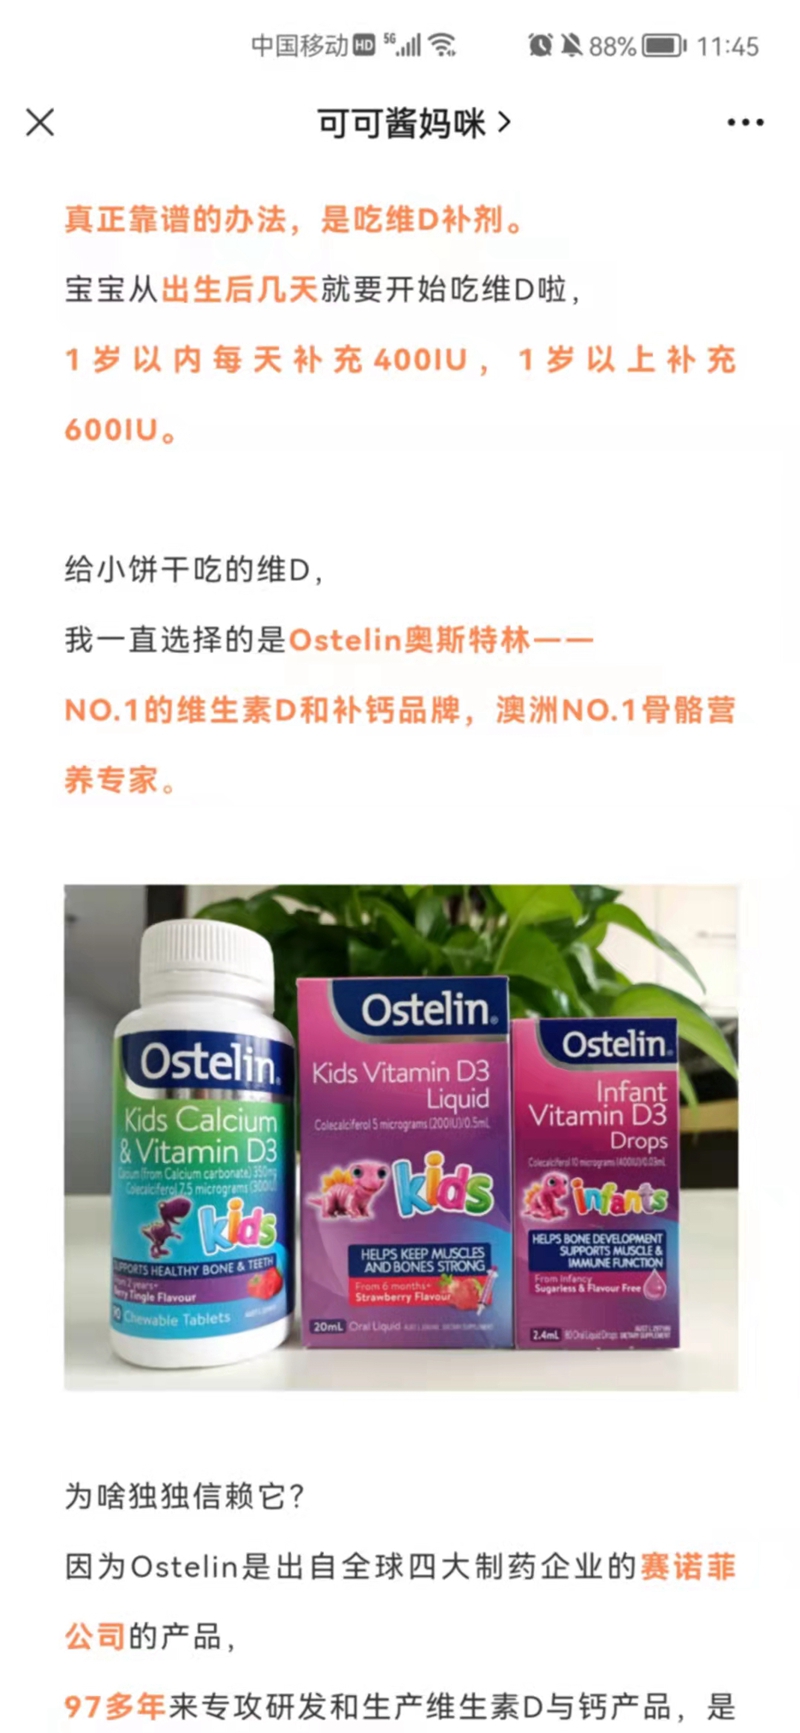 Ostelin奥斯特林维生素D 微信营销 第1张